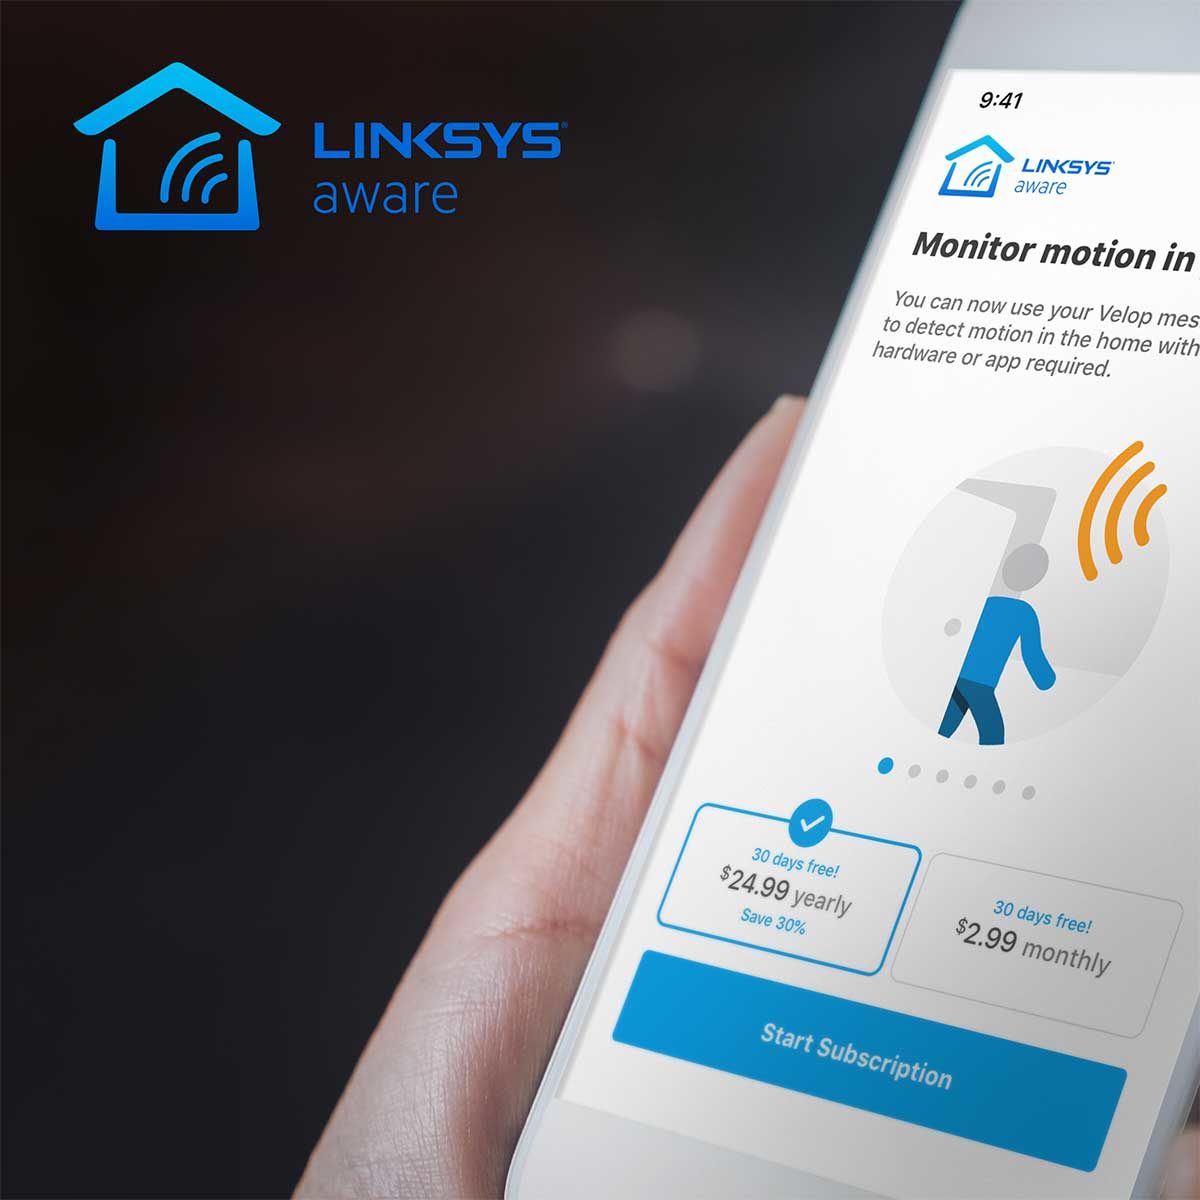 LinkSys offre un servizio per di rivelare la presenza di persone con il WiFI